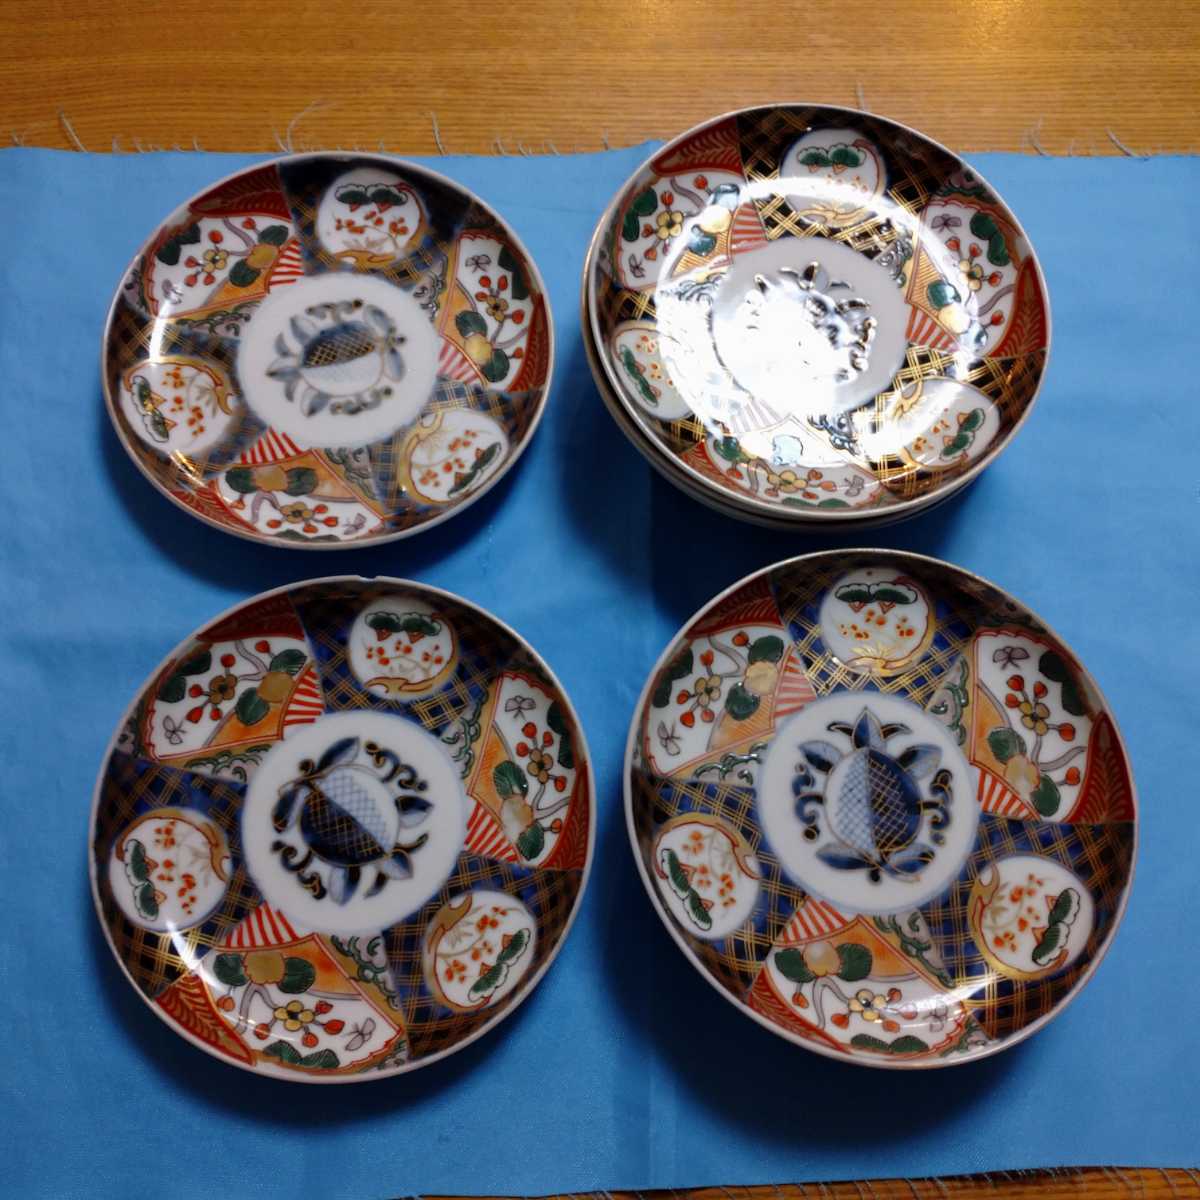 即決!骨董大皿18枚内5枚カケあり色絵金絵手描き昭和レトロアンティーク陶器磁器, 和食器, 皿, 大皿